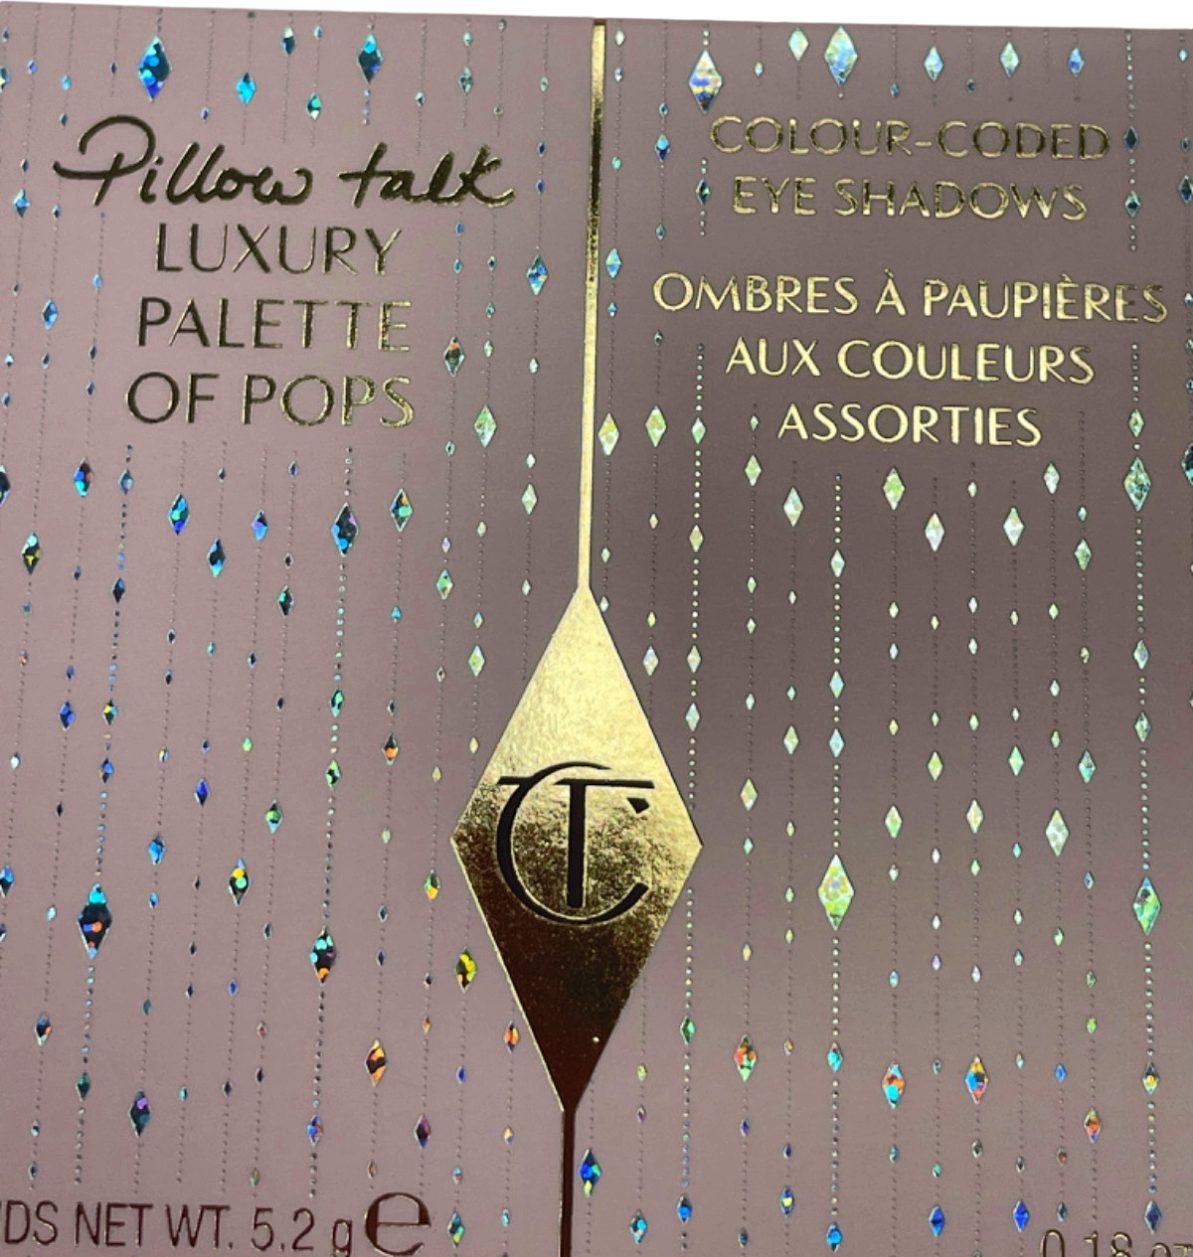 Charlotte Tilbury Pillow Talk Luxury Palette of Pops 5.2g